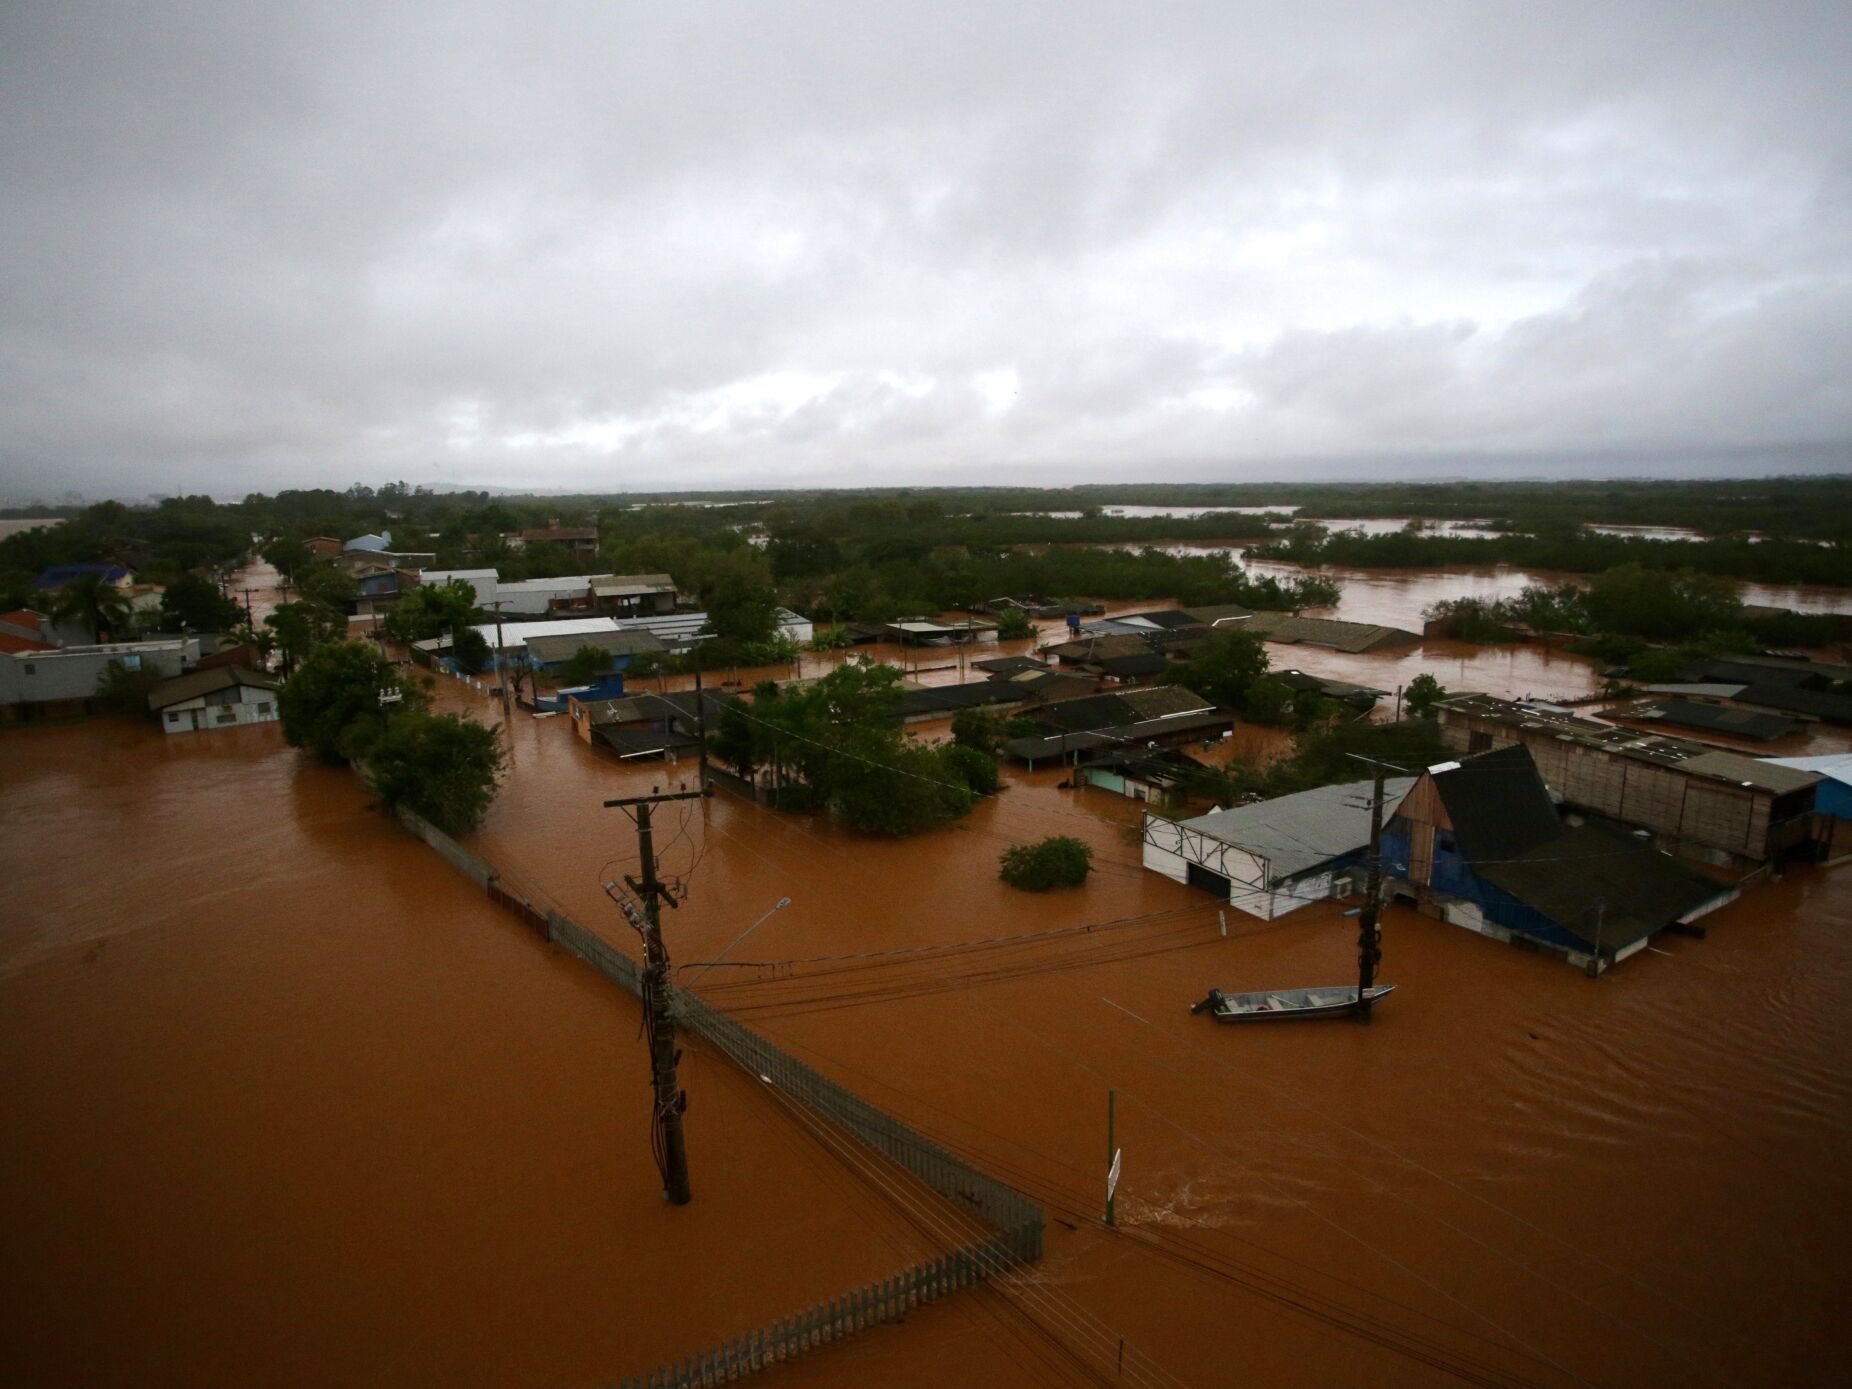 Chuvas torrenciais causam destruição no centro da maior capital do sul do Brasil